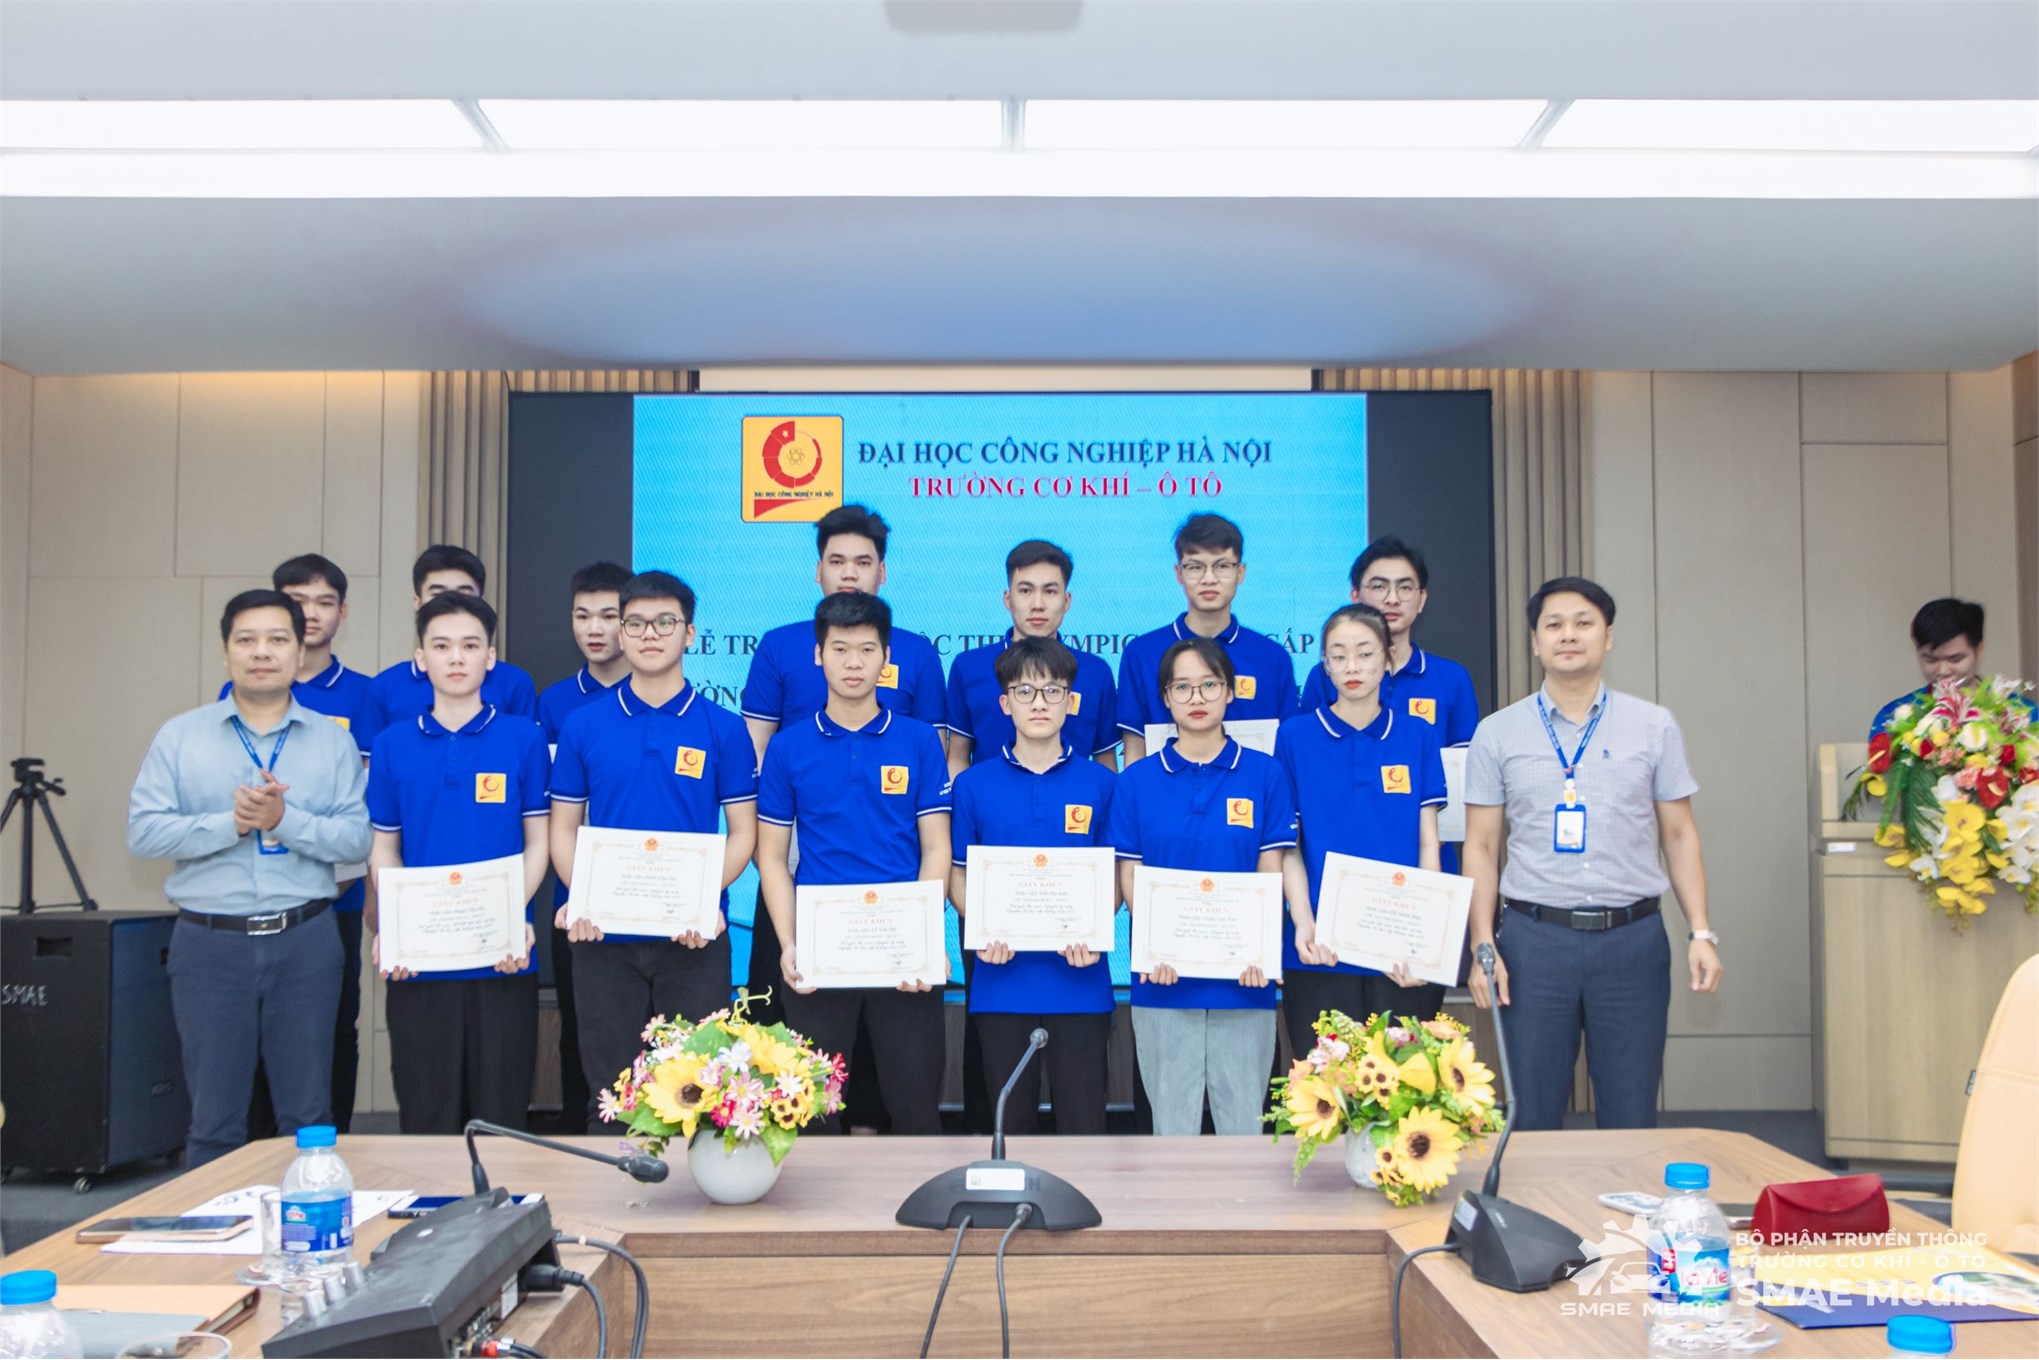 Đội tuyển Olympic Cơ học Trường Cơ khí – Ô tô, Đại học Công nghiệp Hà Nội quyết tâm ra quân thắng lợi